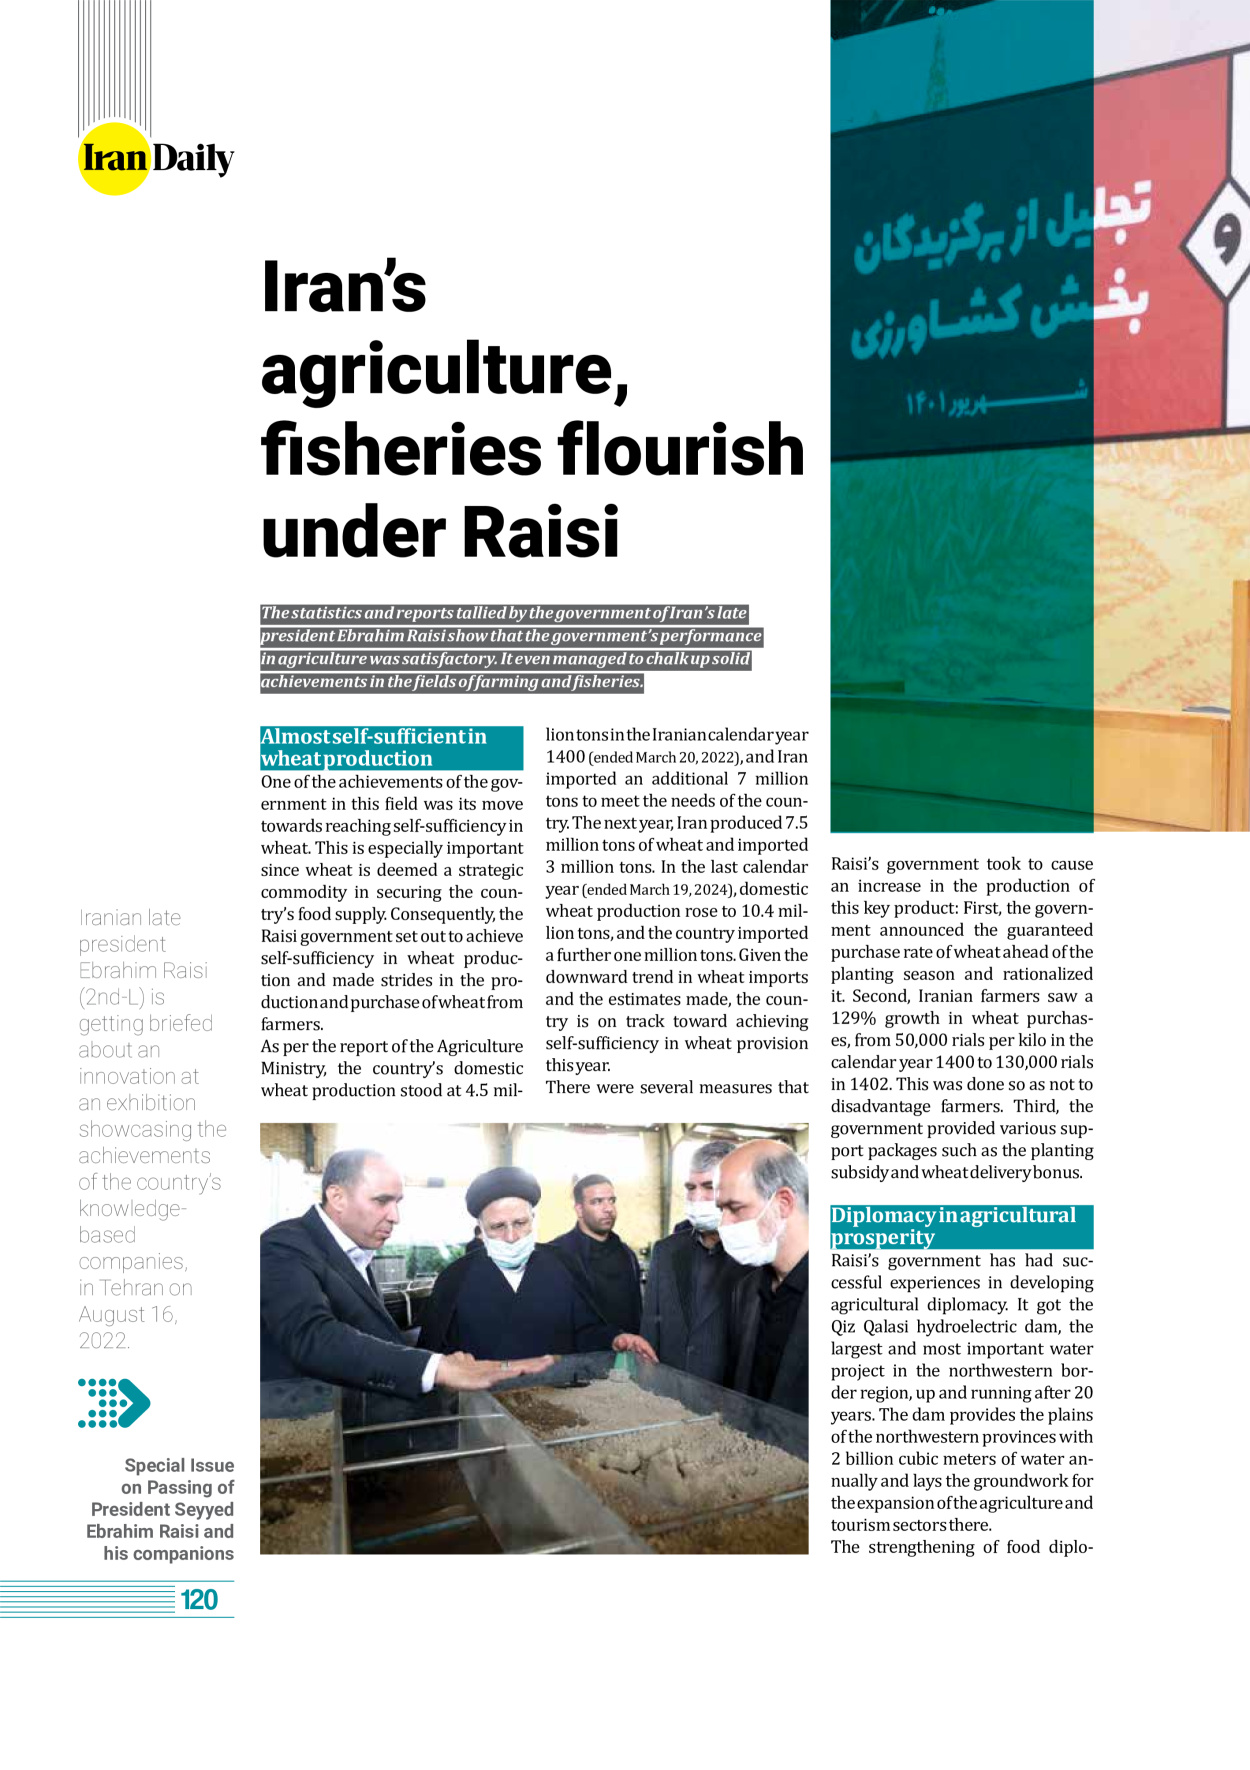 روزنامه ایران - ویژه نامه وِزه نامه چهلم شهید رییسی( انگلیسی) - ۱۷ تیر ۱۴۰۳ - صفحه ۱۲۰